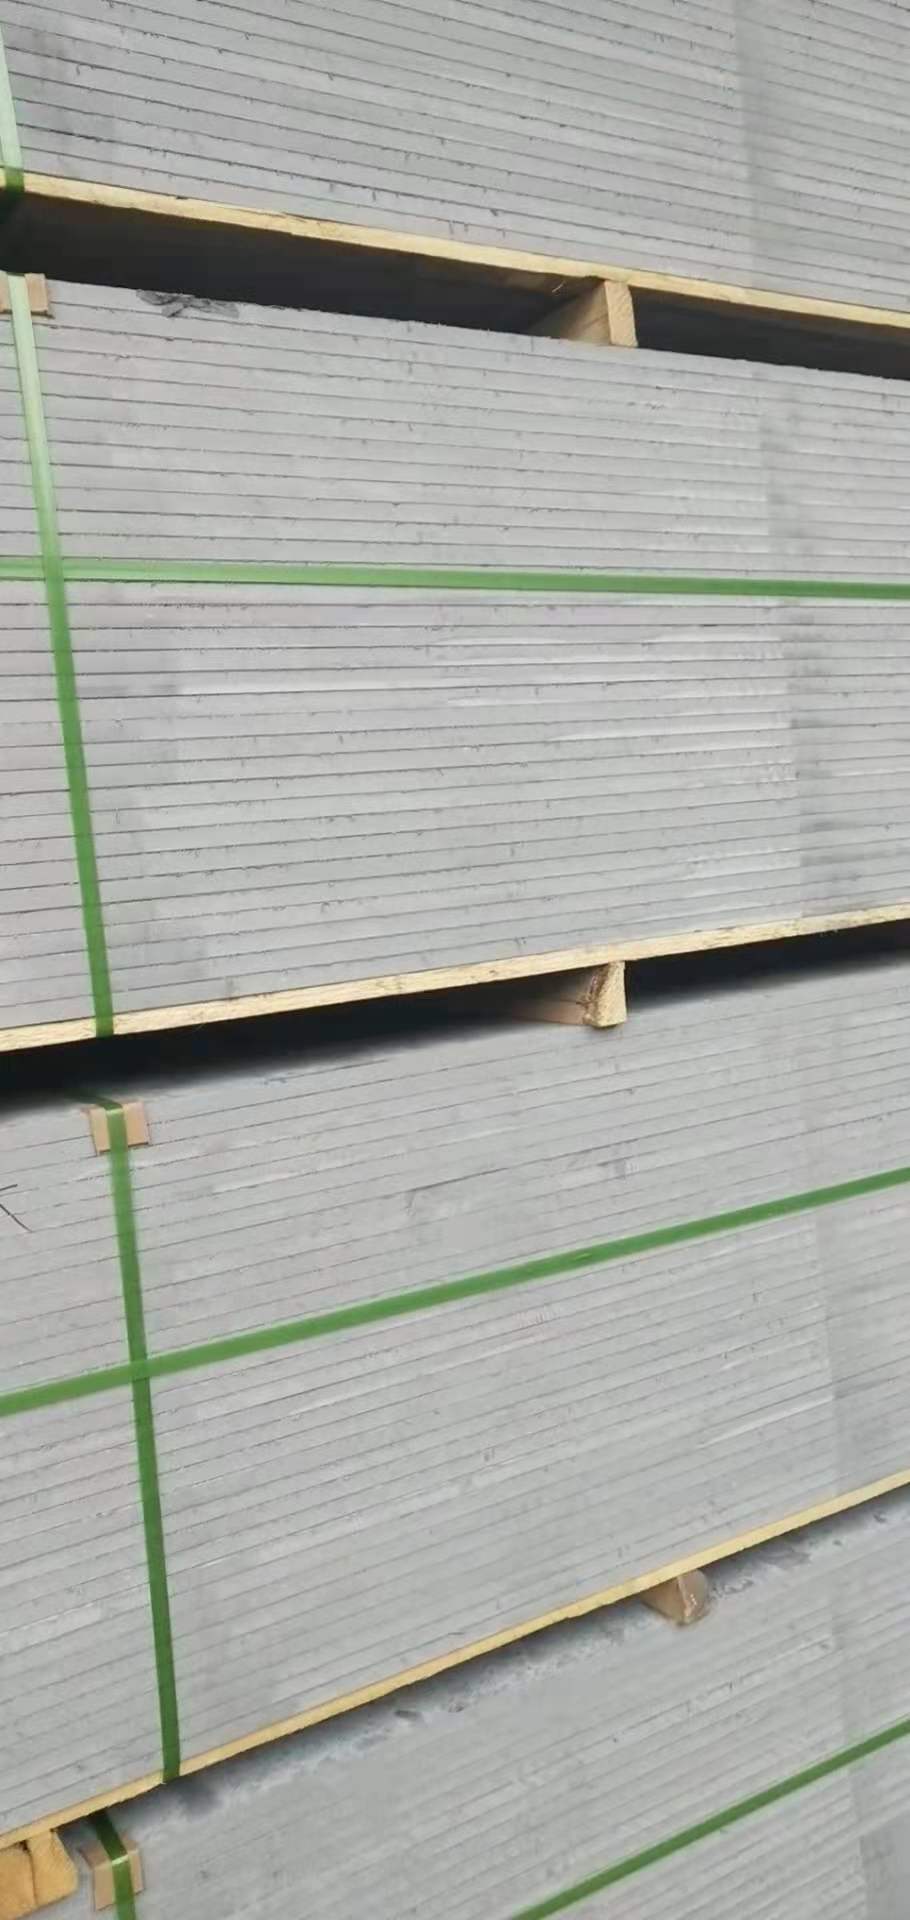 纤维水泥板 隔断板 纤维增强水泥压力板 耐火、防火材料2